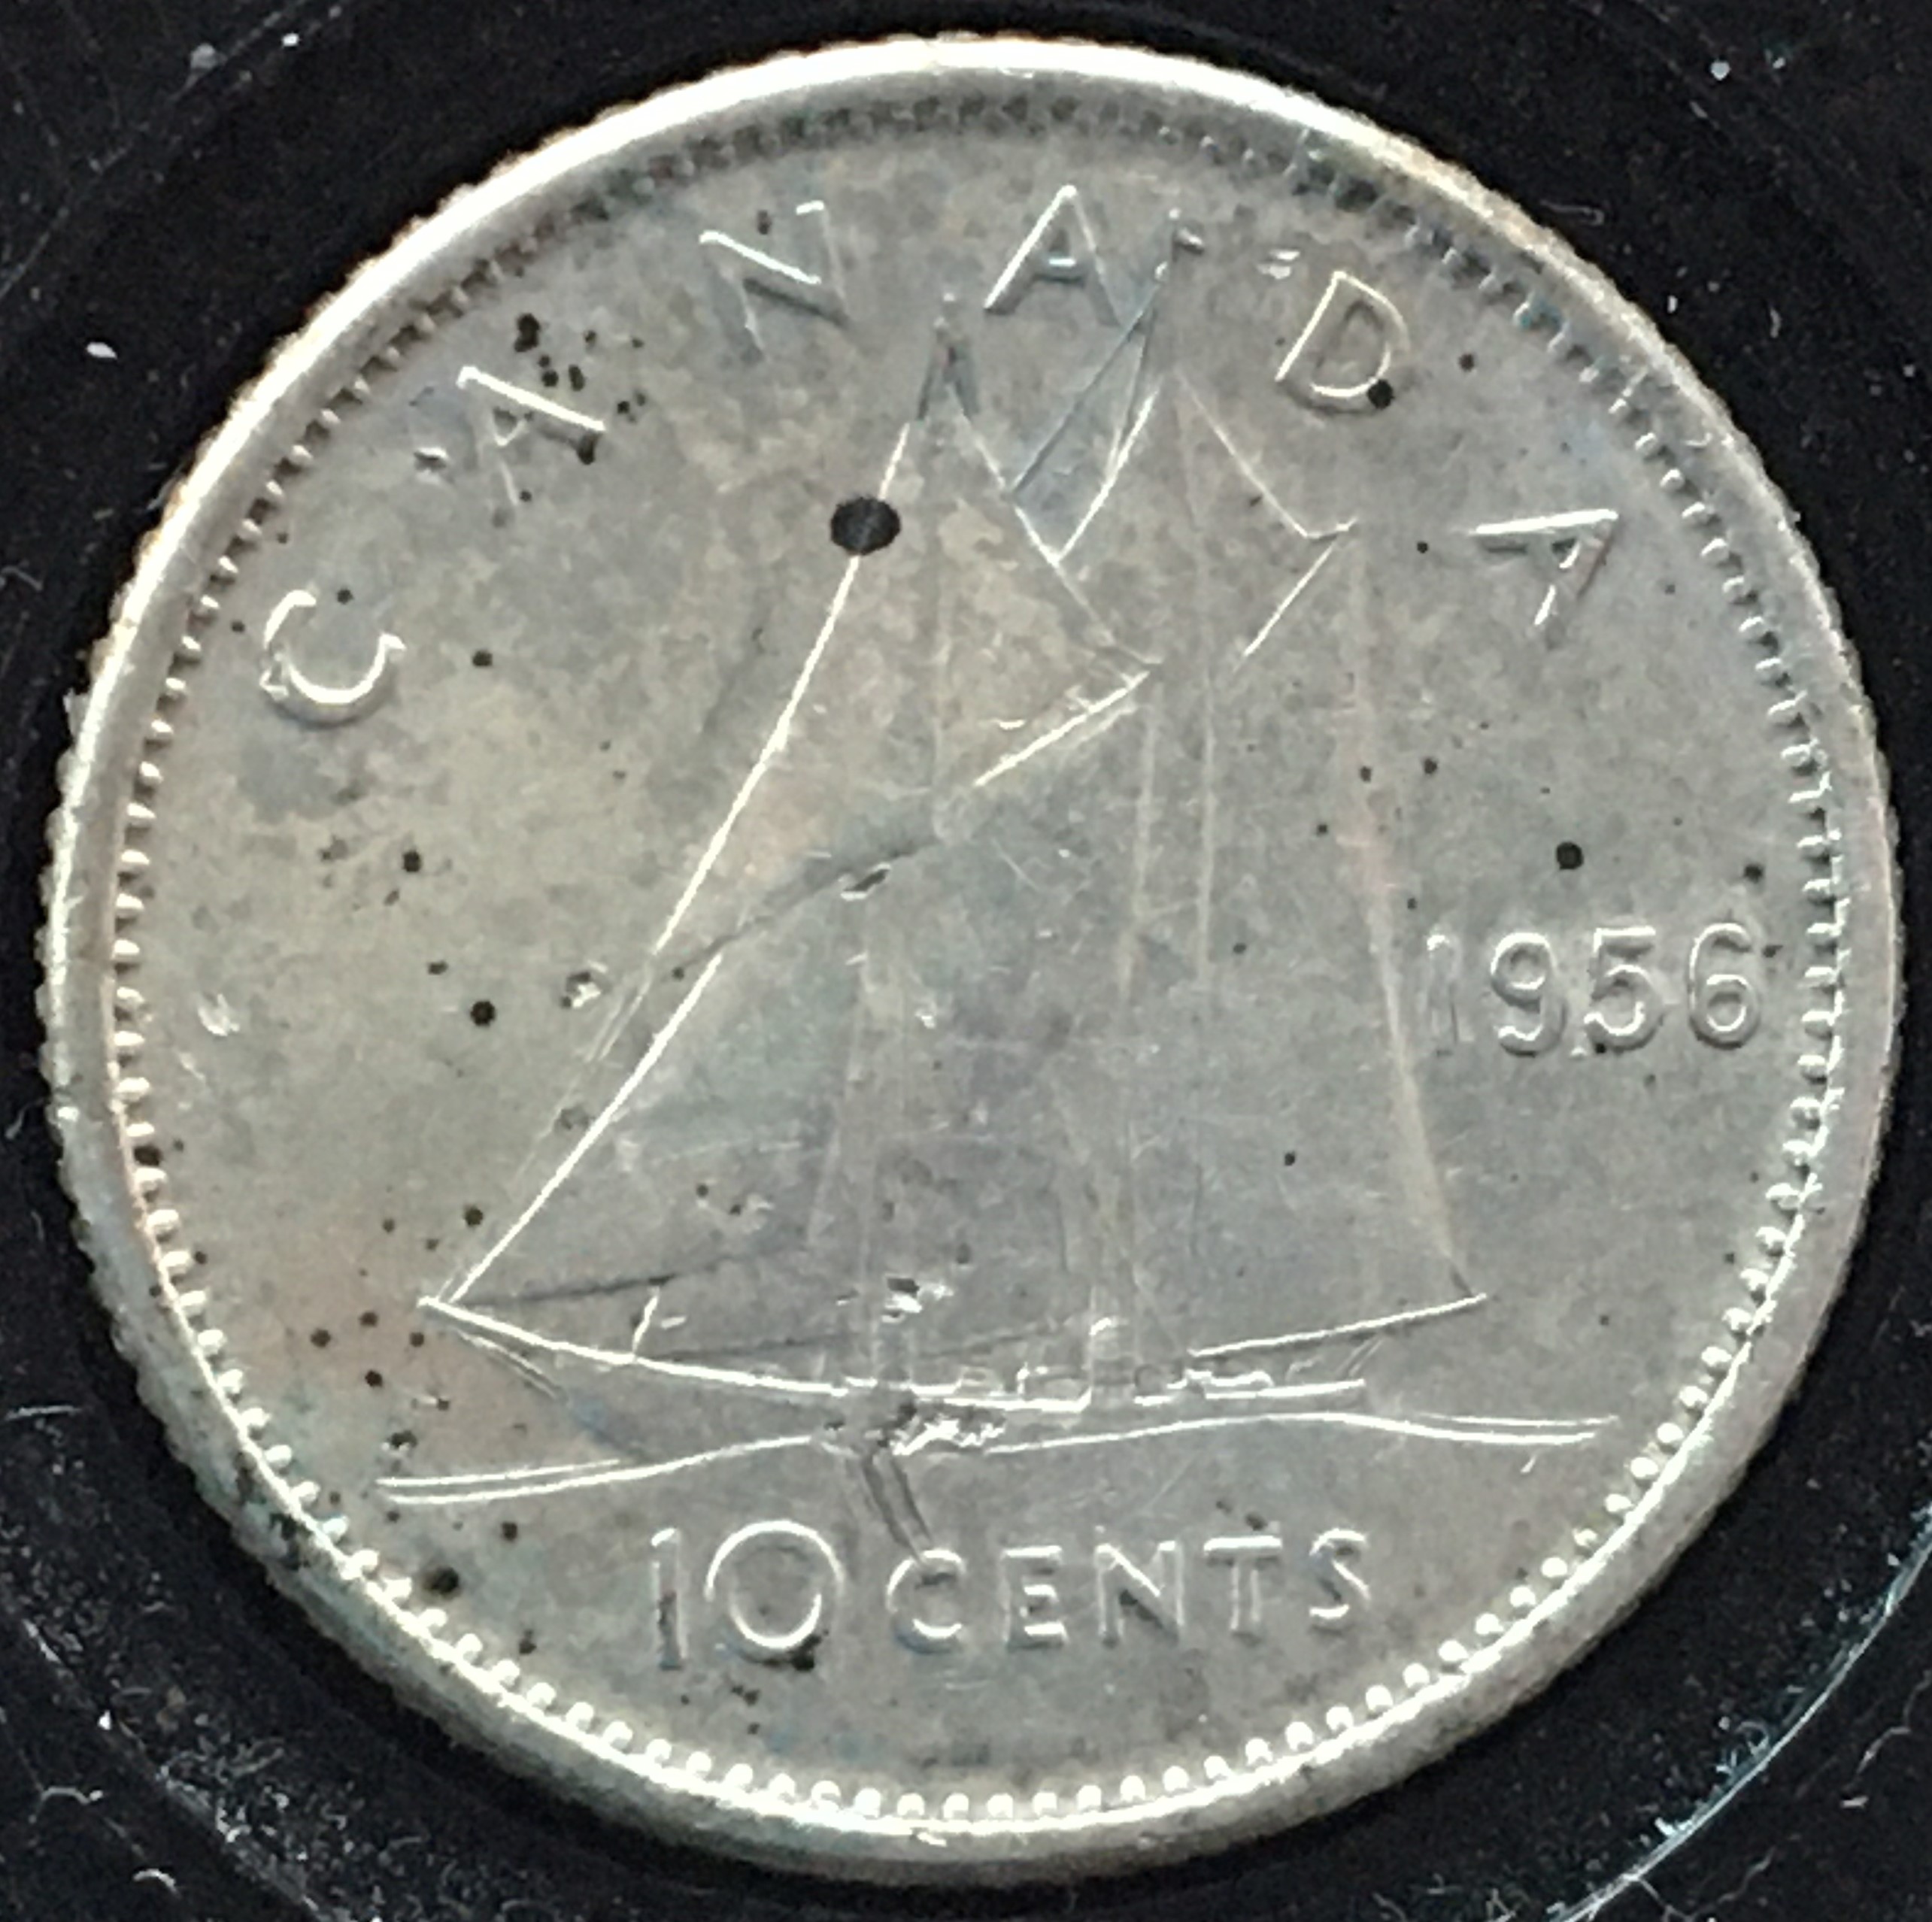 10 cents 1956 dot revers.JPG